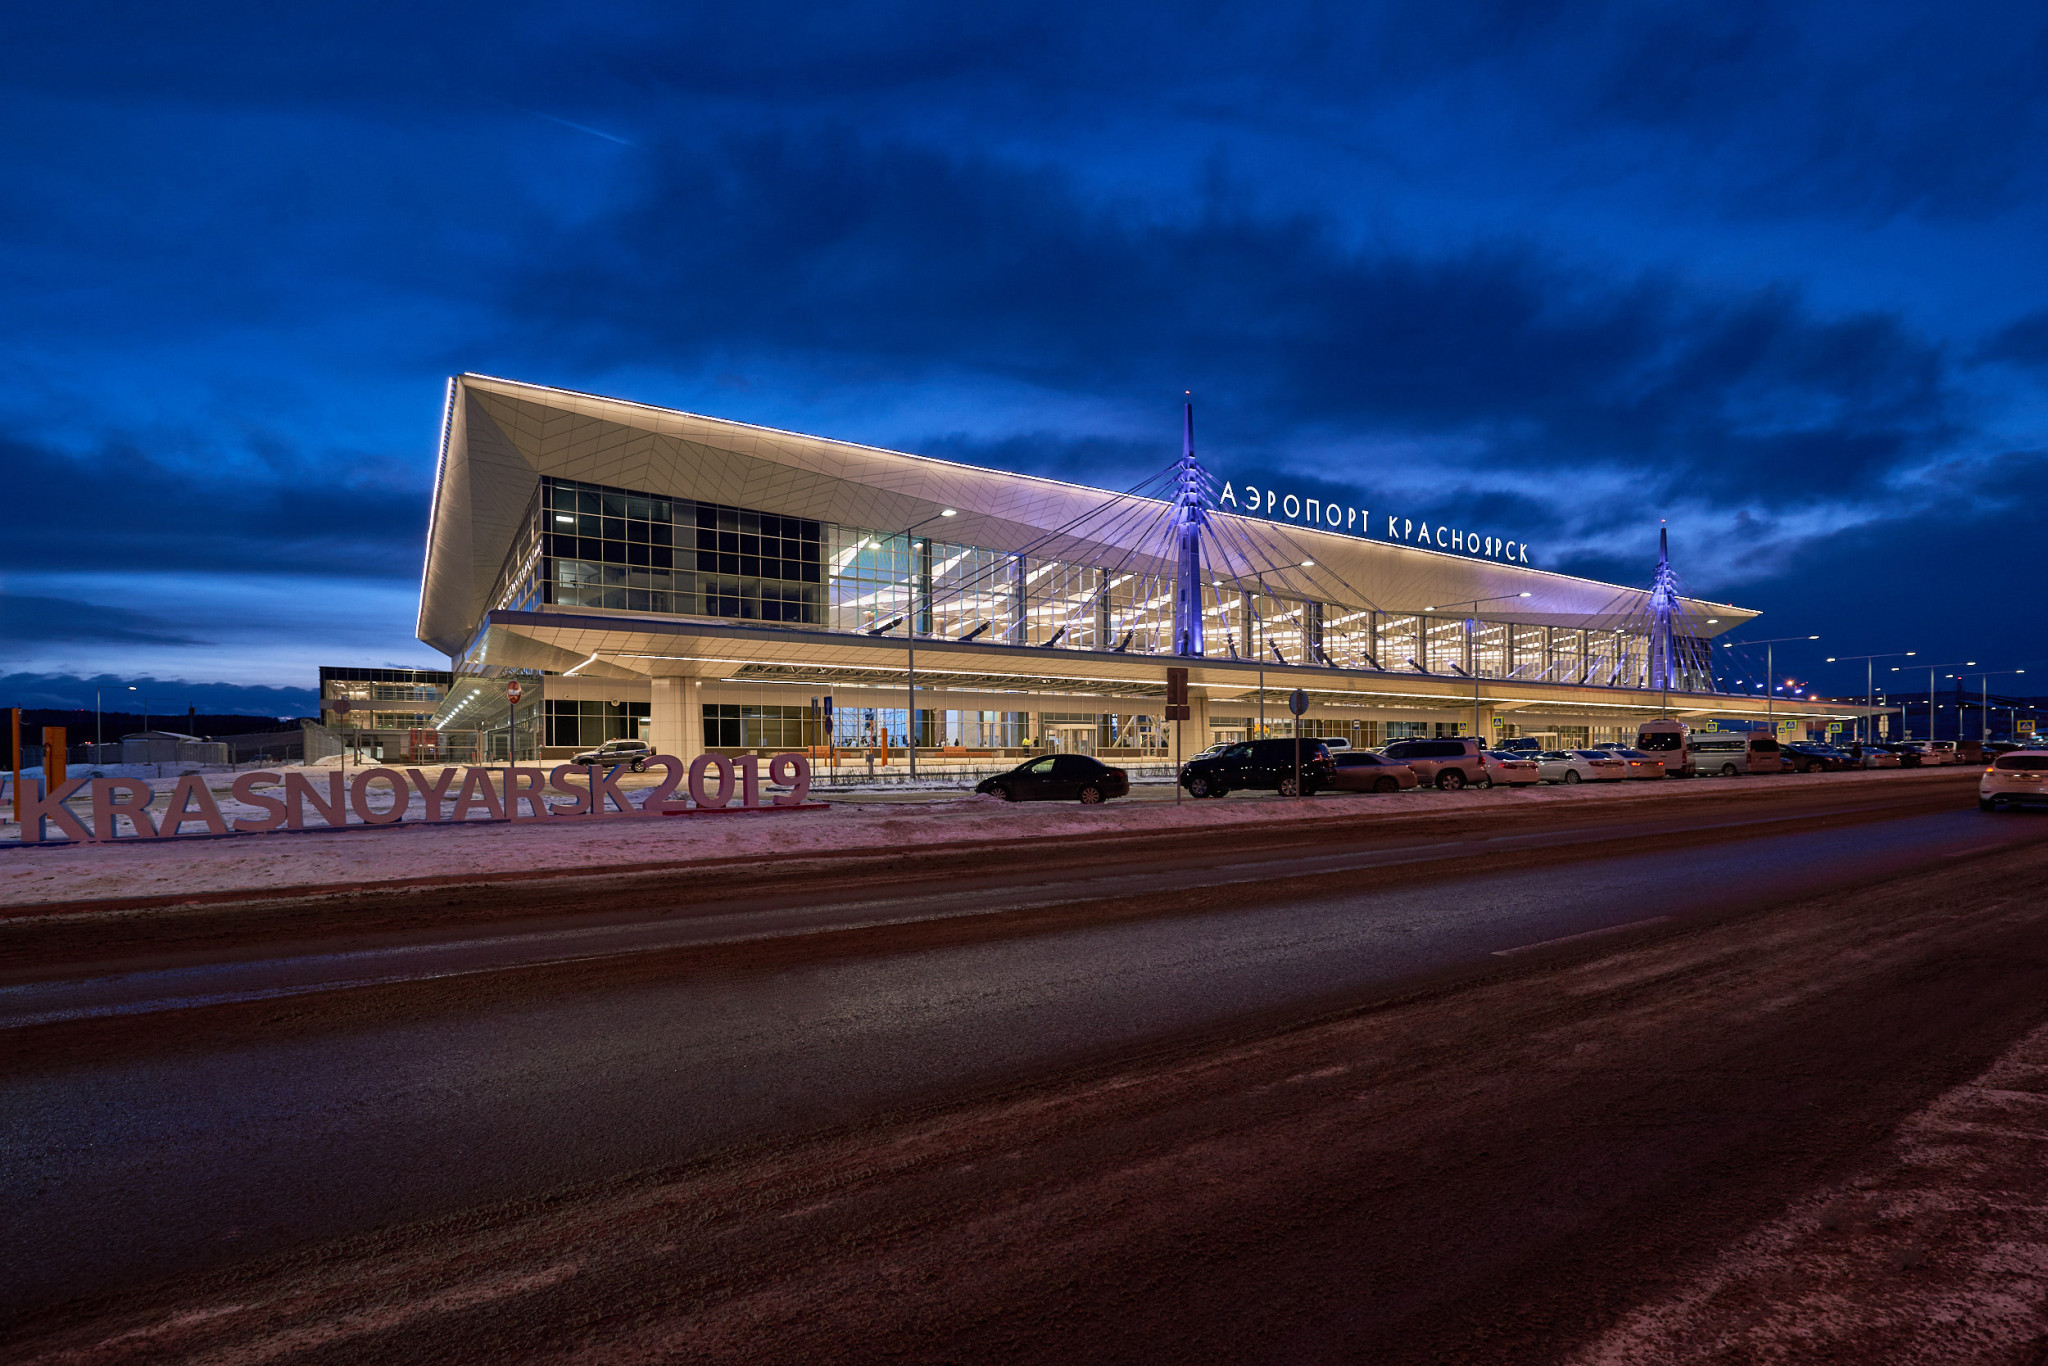 Krasnoyarsk airport opens new terminal in preparation for 2019 Universiade